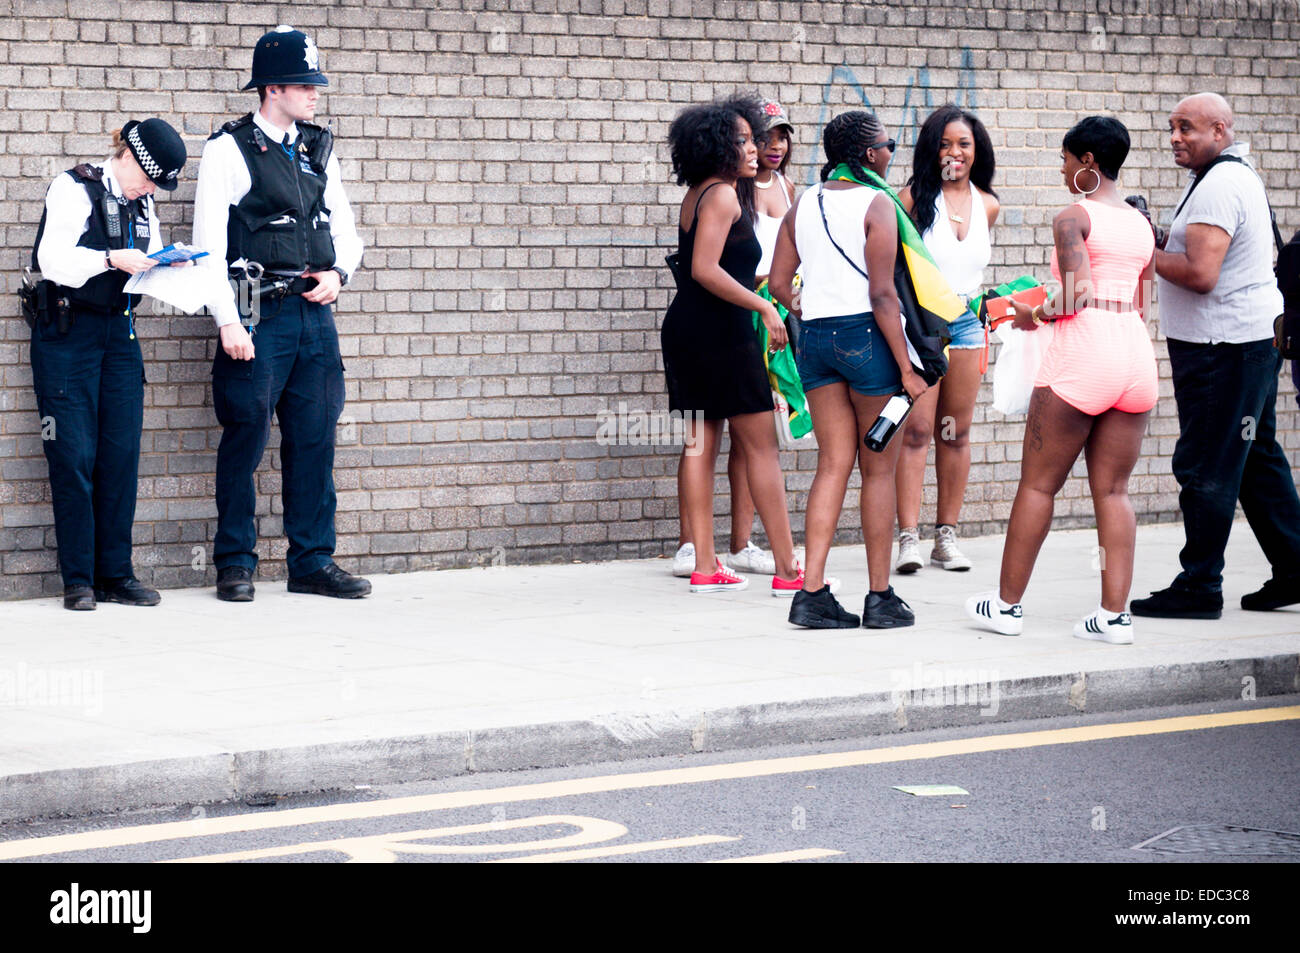 Londres, Reino Unido - 24 de agosto de 2014: el Carnaval de Notting Hill, un grupo de personas se reúnen junto a dos oficiales de policía de pie Foto de stock